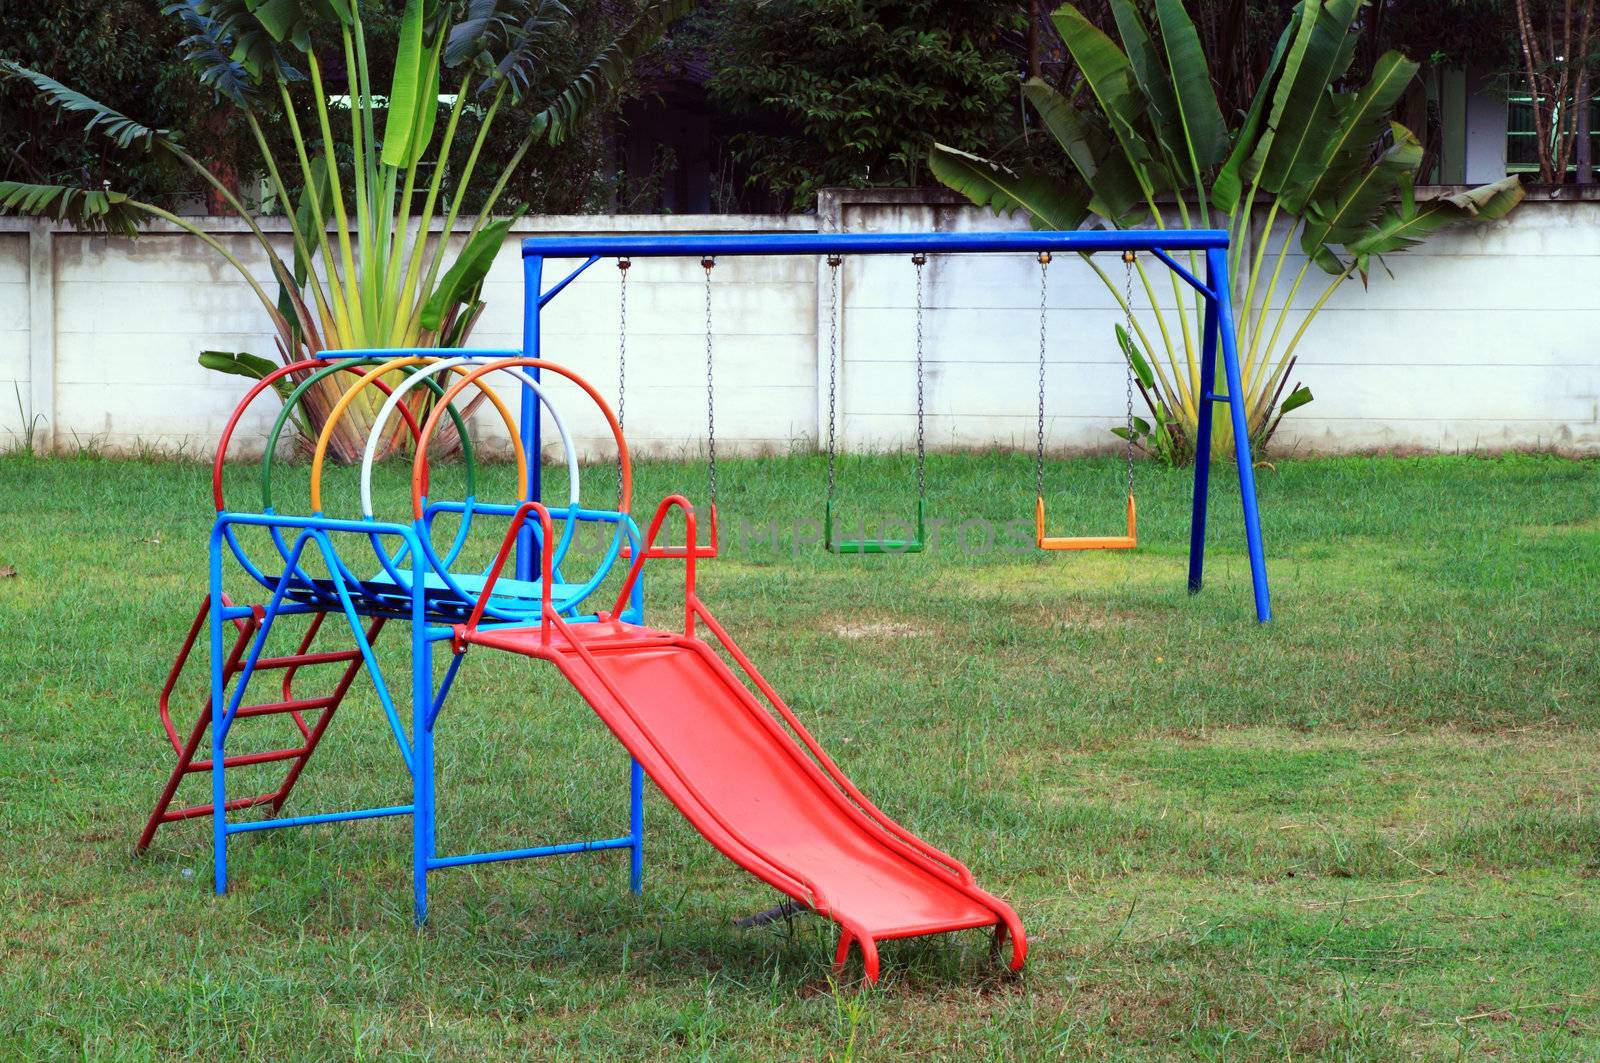 Playground without children by geargodz